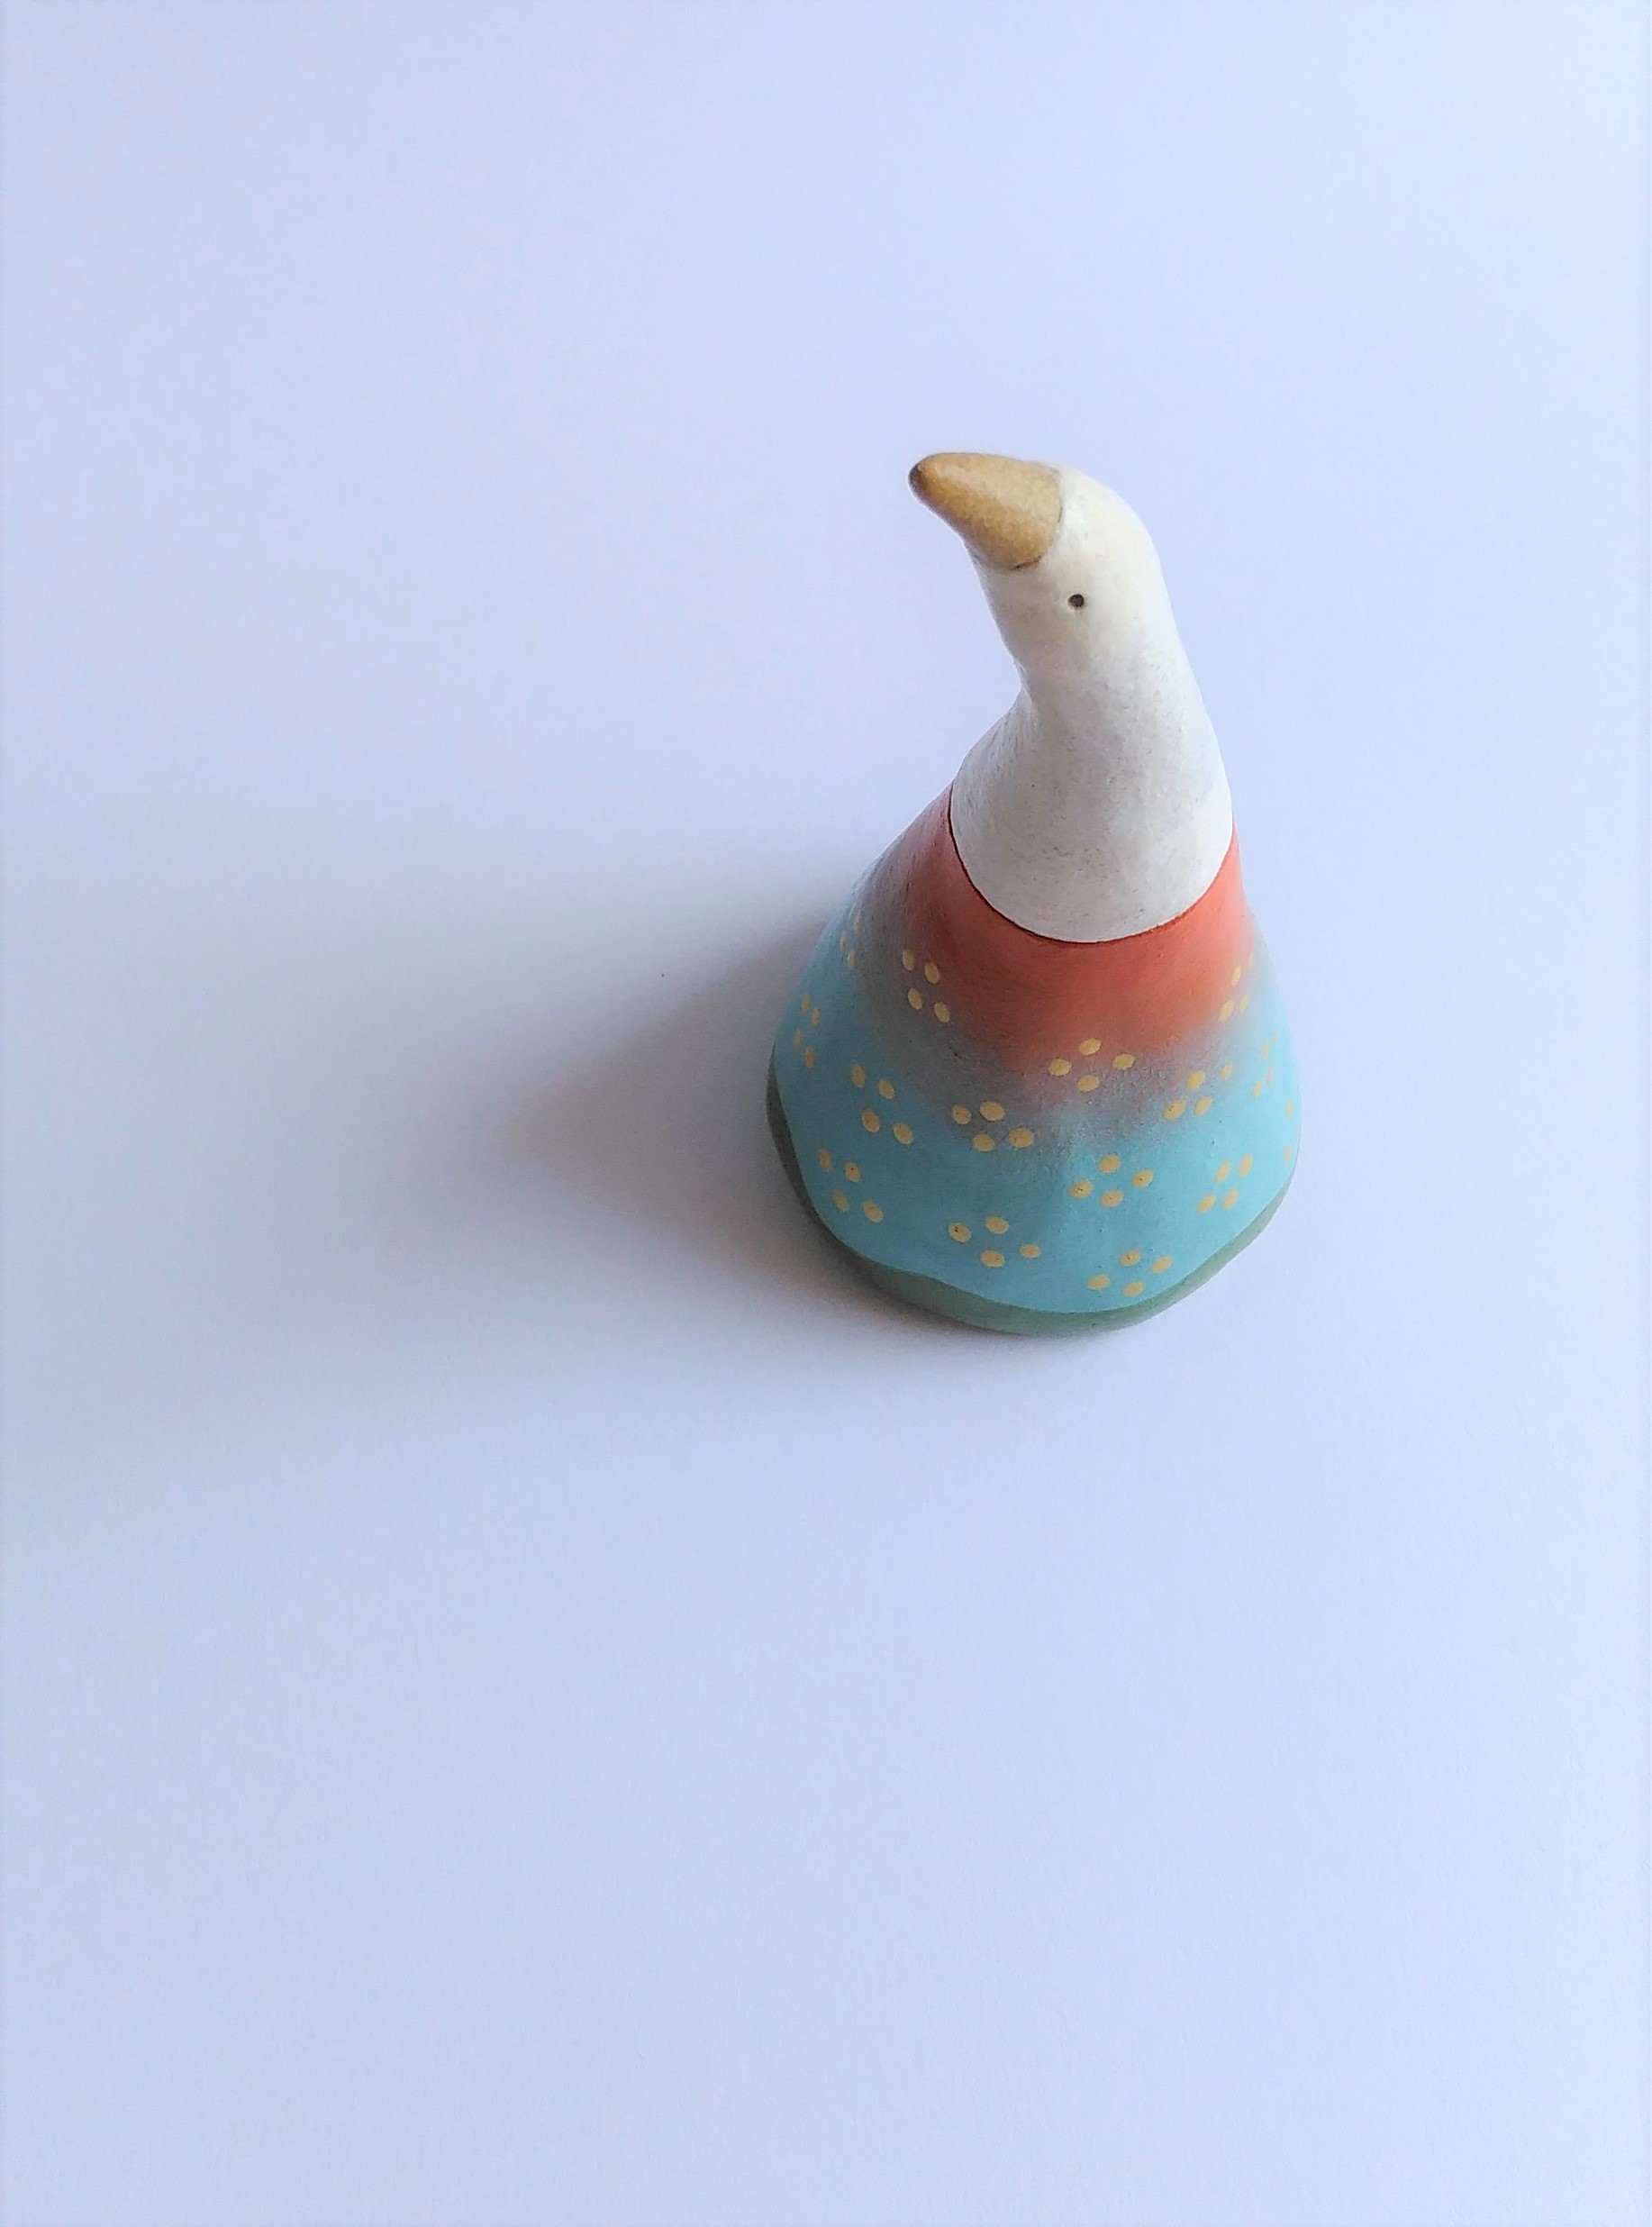 ワンピースを着た白い鳥の置き物 Japan Ver 一点限り Iichi ハンドメイド クラフト作品 手仕事品の通販